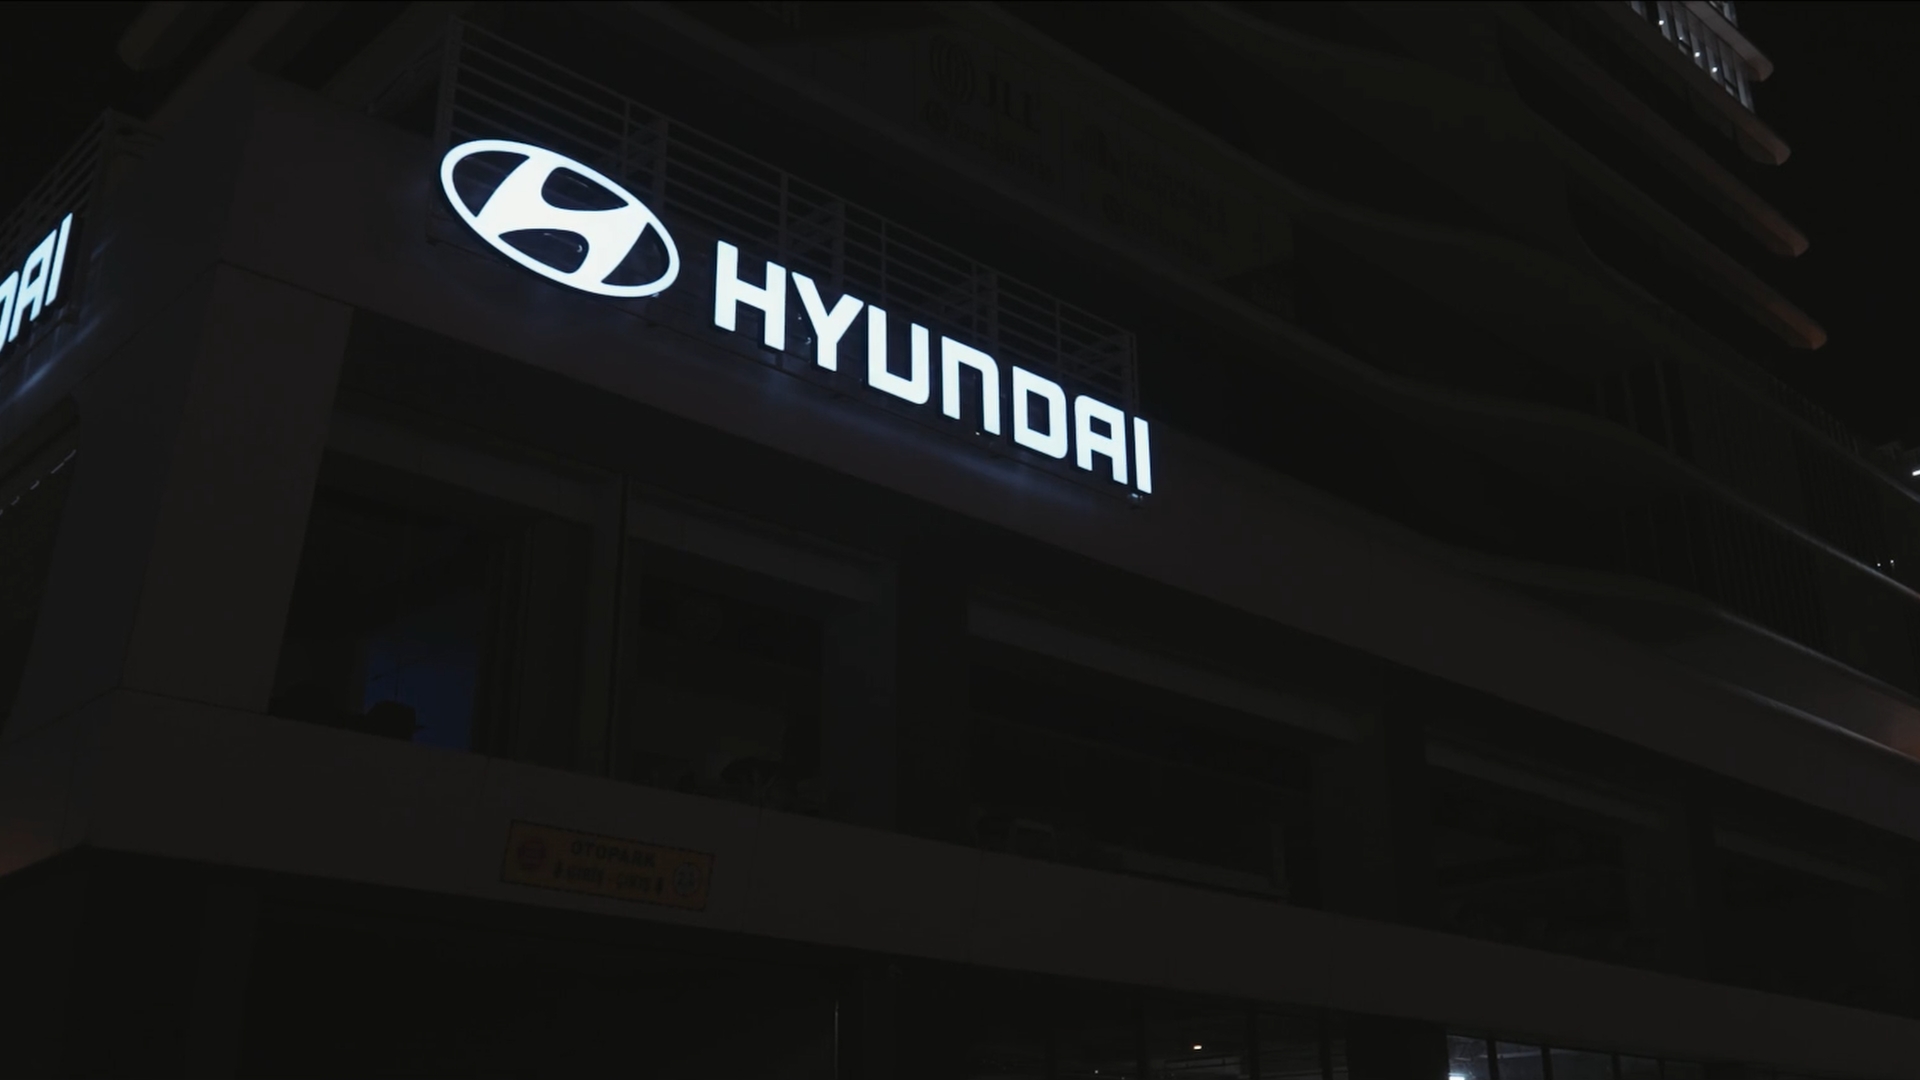 HAOS - Hyundai / A New Chapter